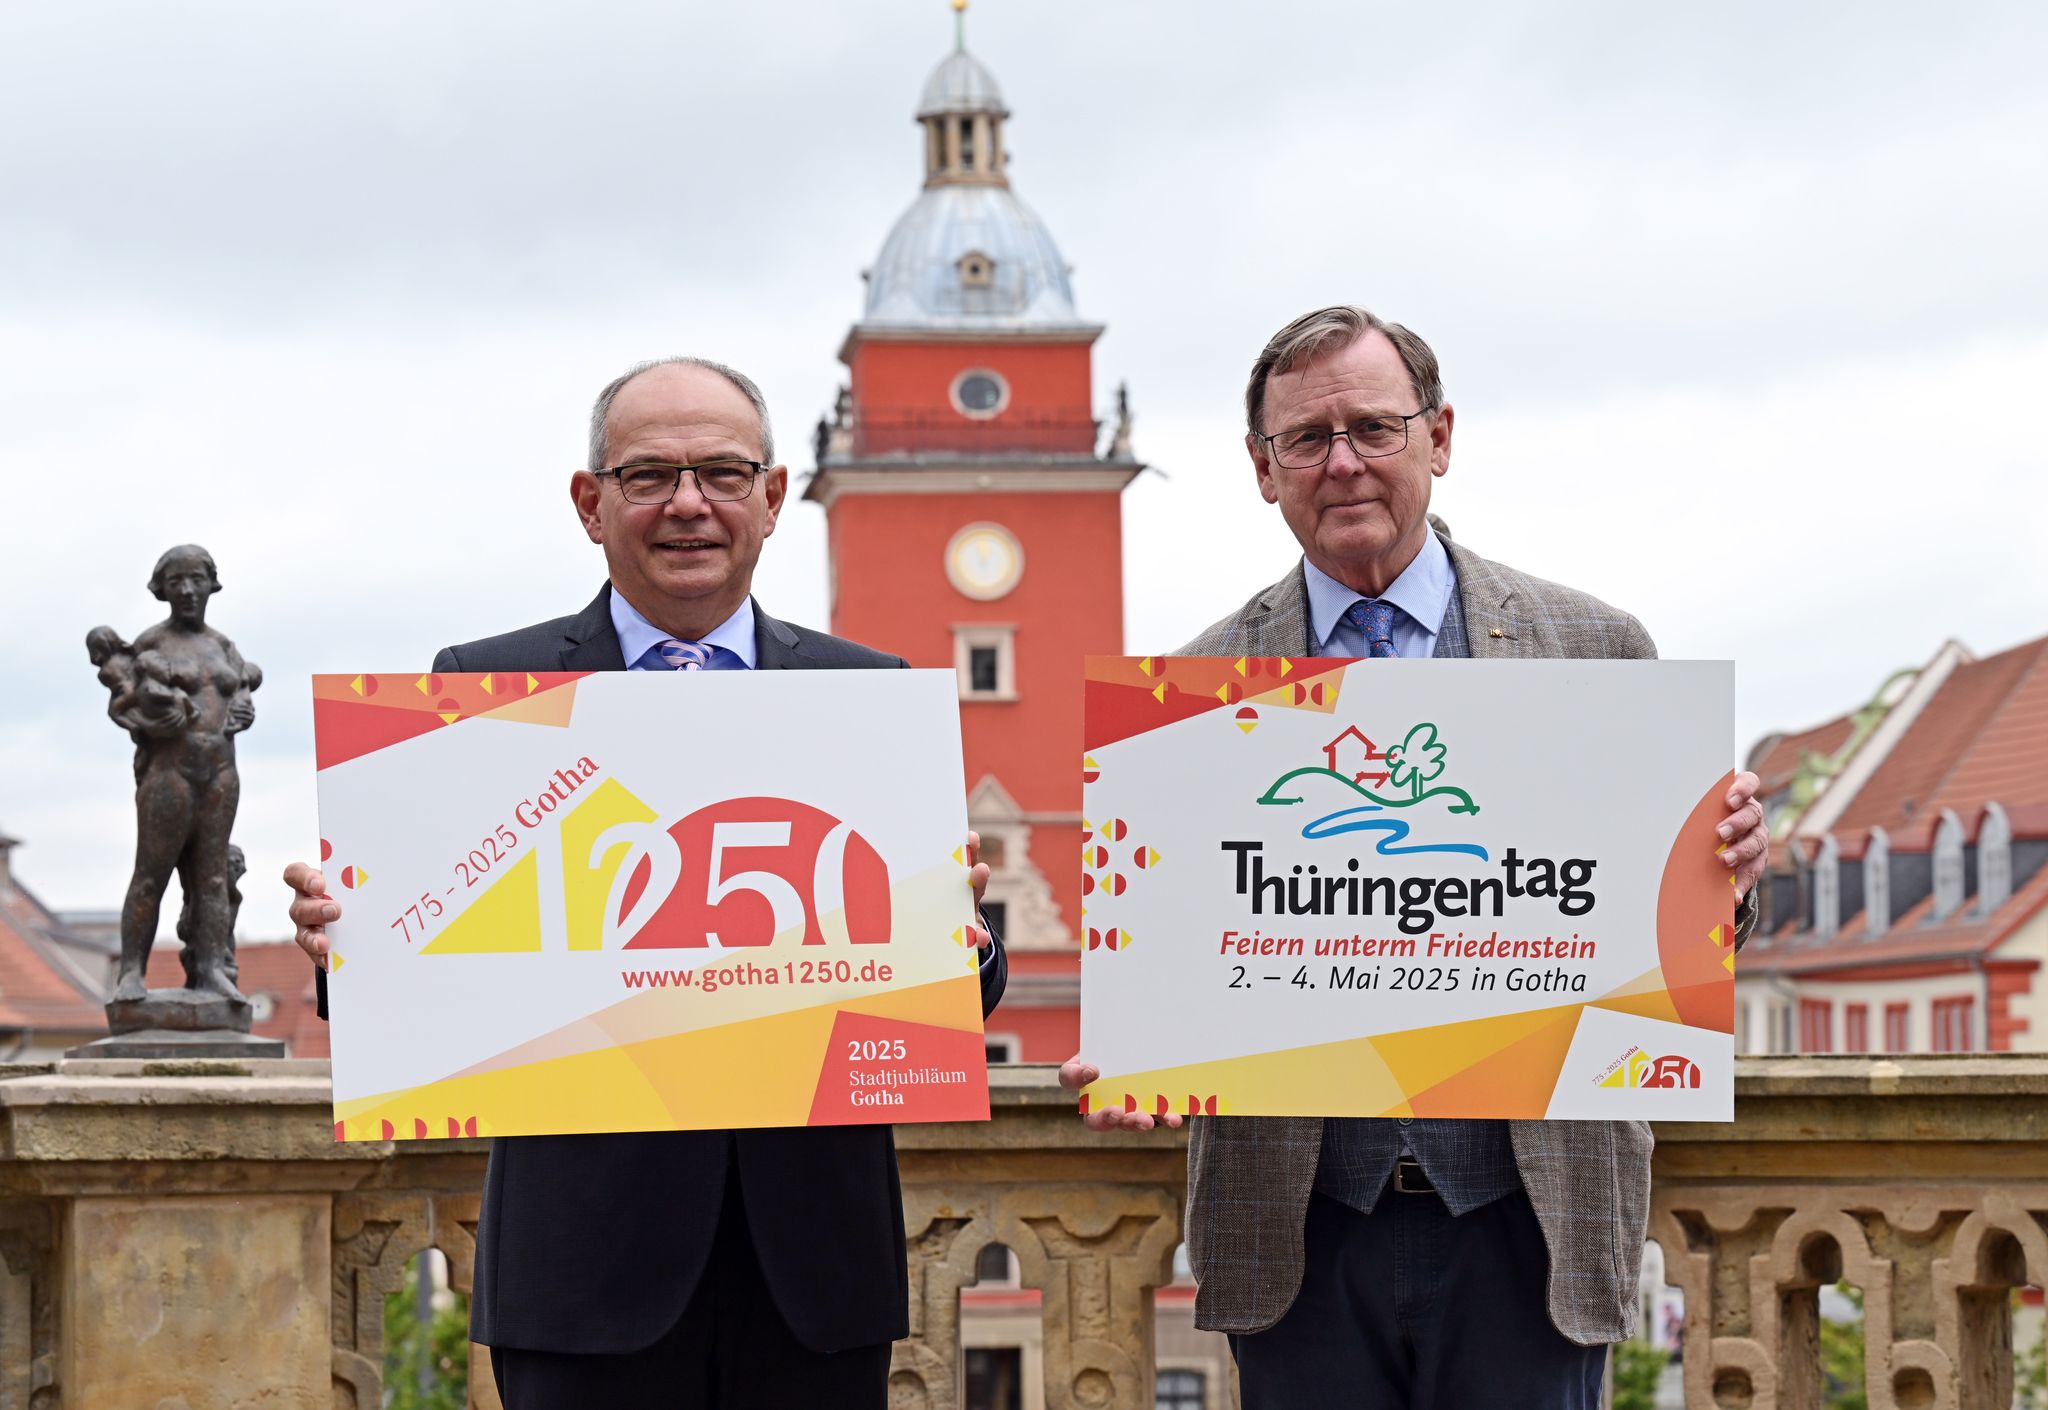 Vorbereitung des Thringentag 2025 in Gotha 
Gotha bereitet sich auf den Thringentag 2025 vor. Ministerprsident Bodo Ramelow (r.) und OB Knut Kreuch (SPD) mit den Logos von Landesfest und Stadtjubilum vor dem Historischen Rathaus. Martin Schutt/dpa  DPA